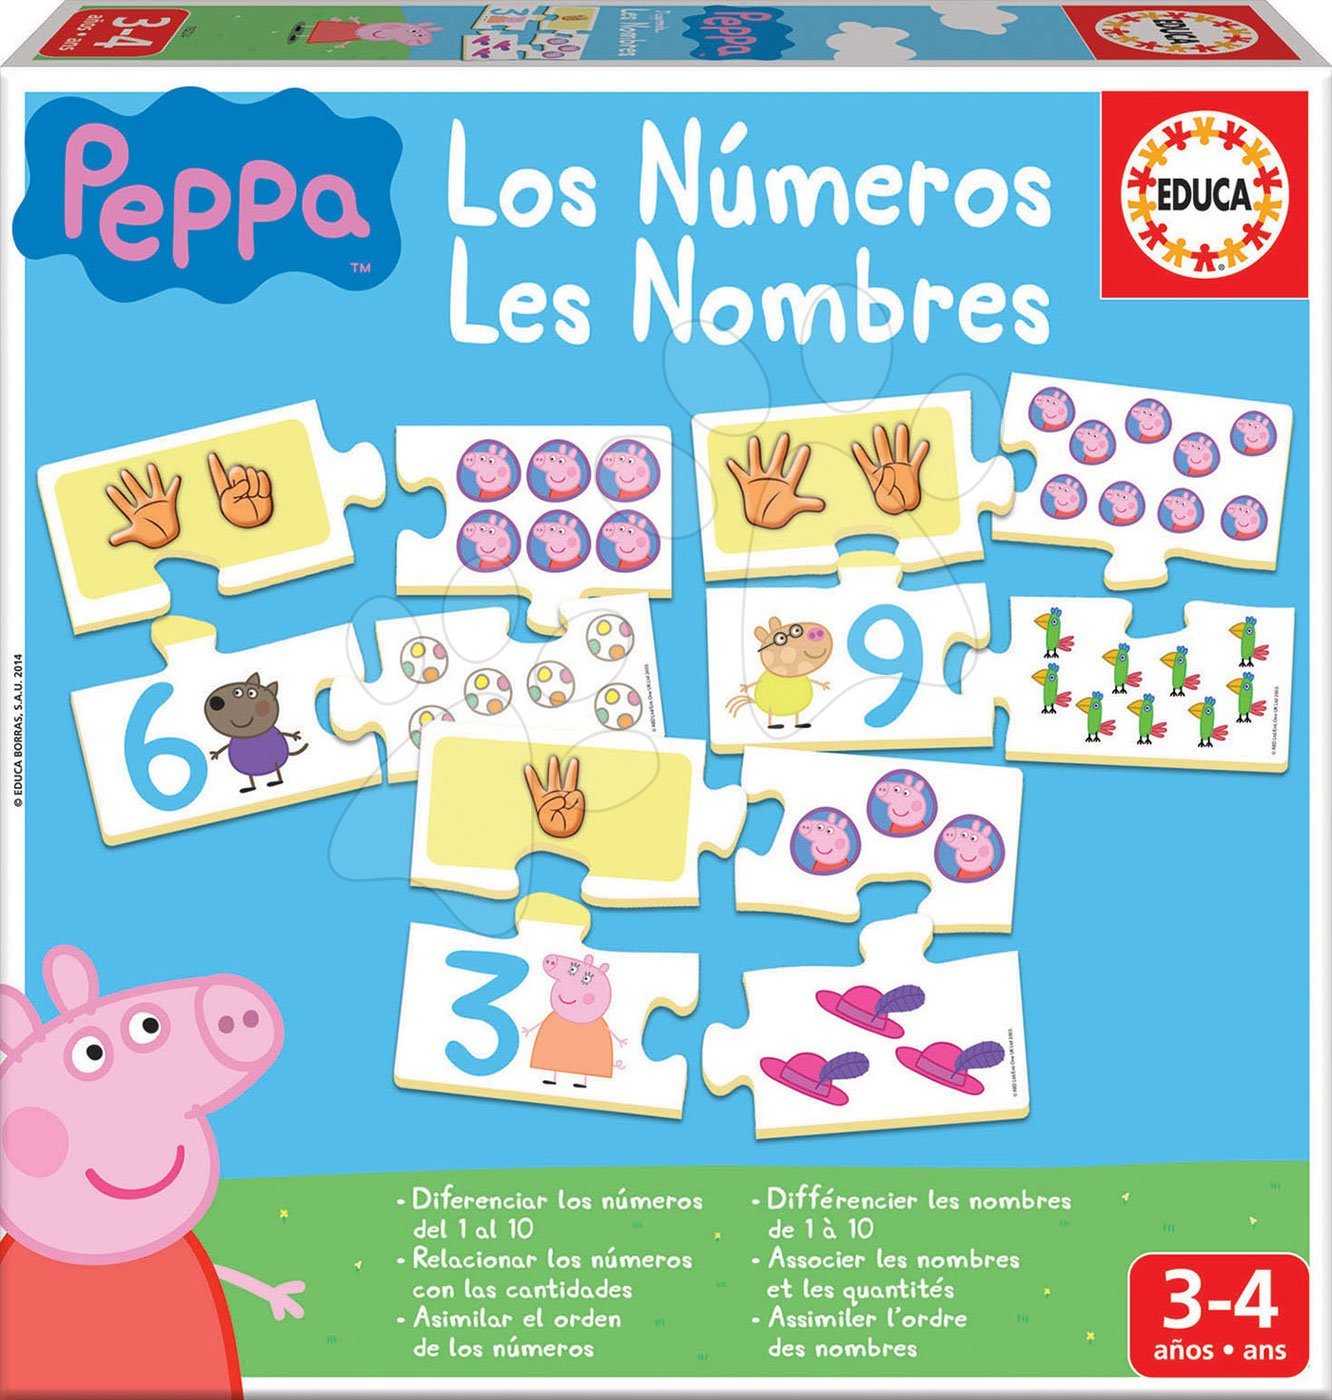 Naučná hra Učíme se Čísla Peppa Pig Educa s obrázky a počty 40 dílů